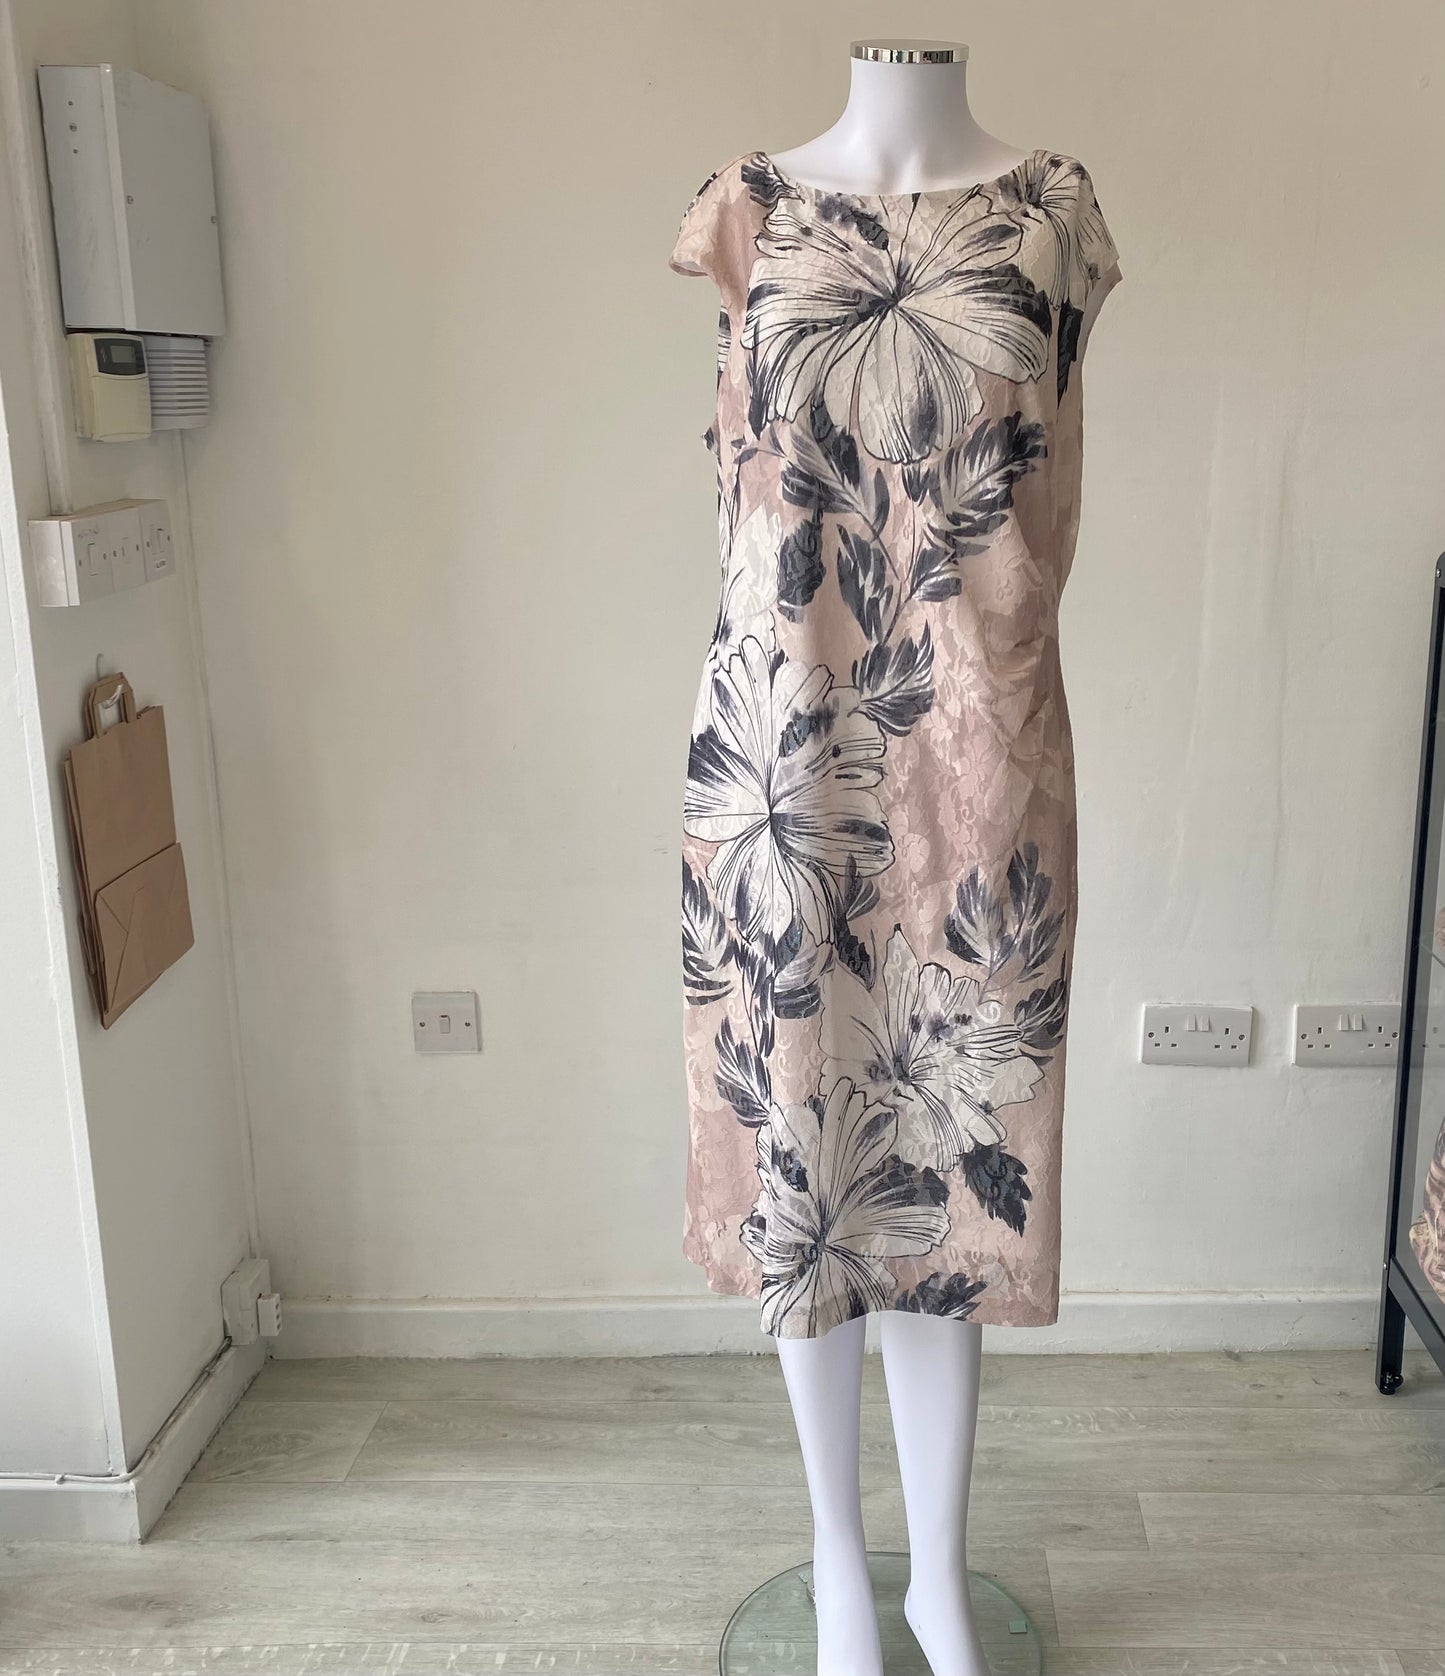 Roman Floral Print Dress Size 18